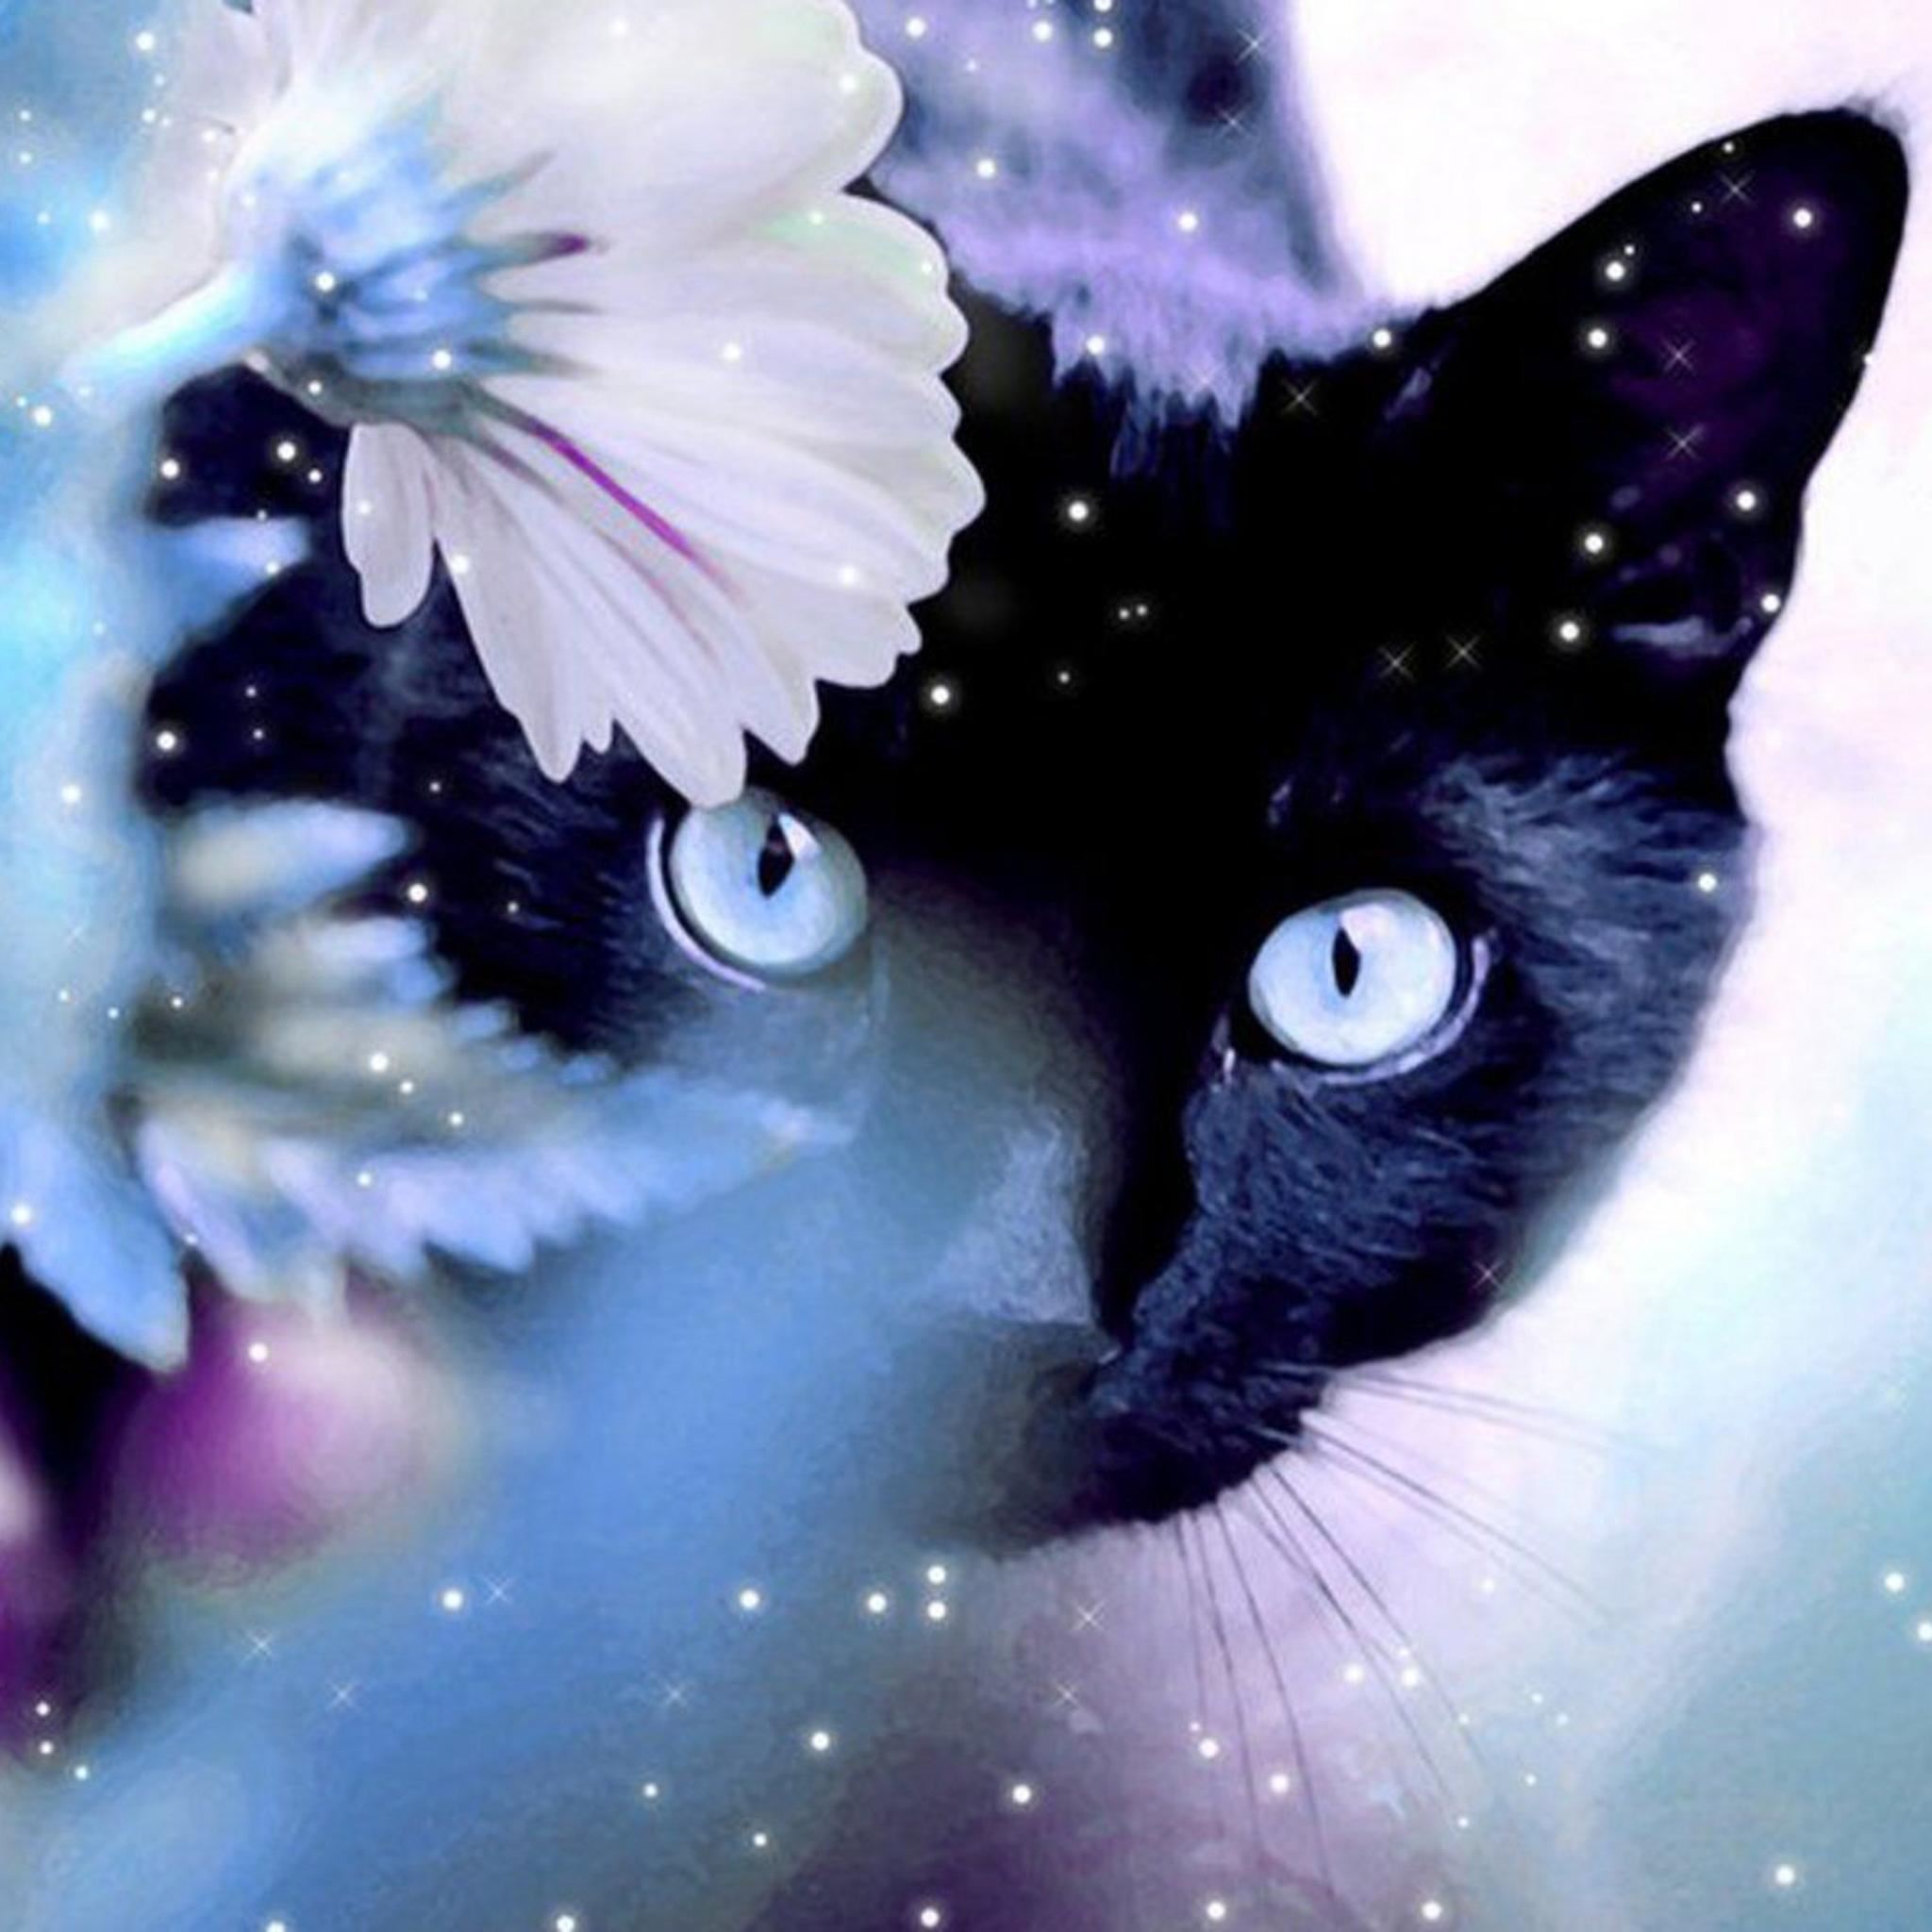  Cute Kawaii Cat Wallpapers Full HD Wallpaper Images Free Download